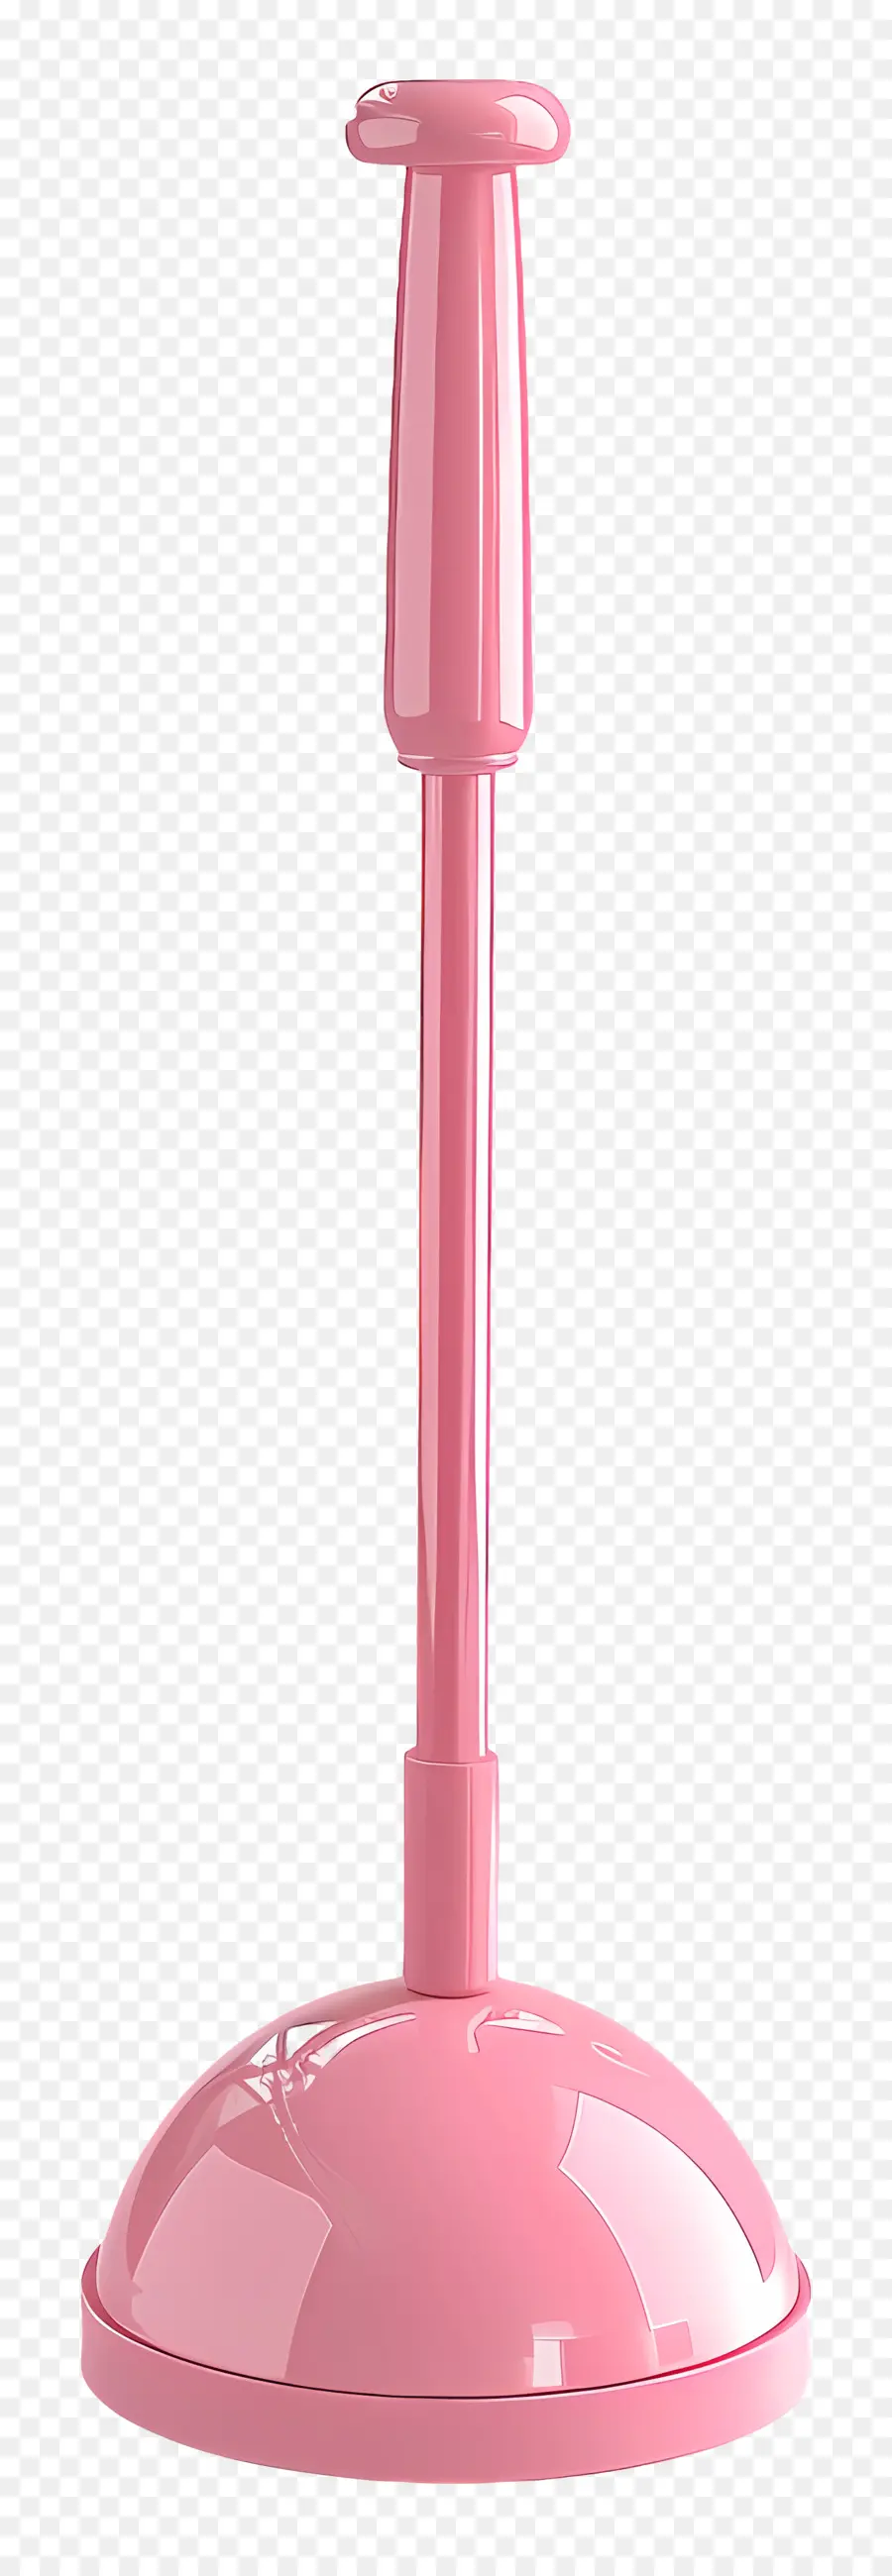 lampada rosa dello stantuffo del gabinetto tradizionale lampada a braccio regolabile lampada lampada in plastica - Base lampada rosa con braccio regolabile